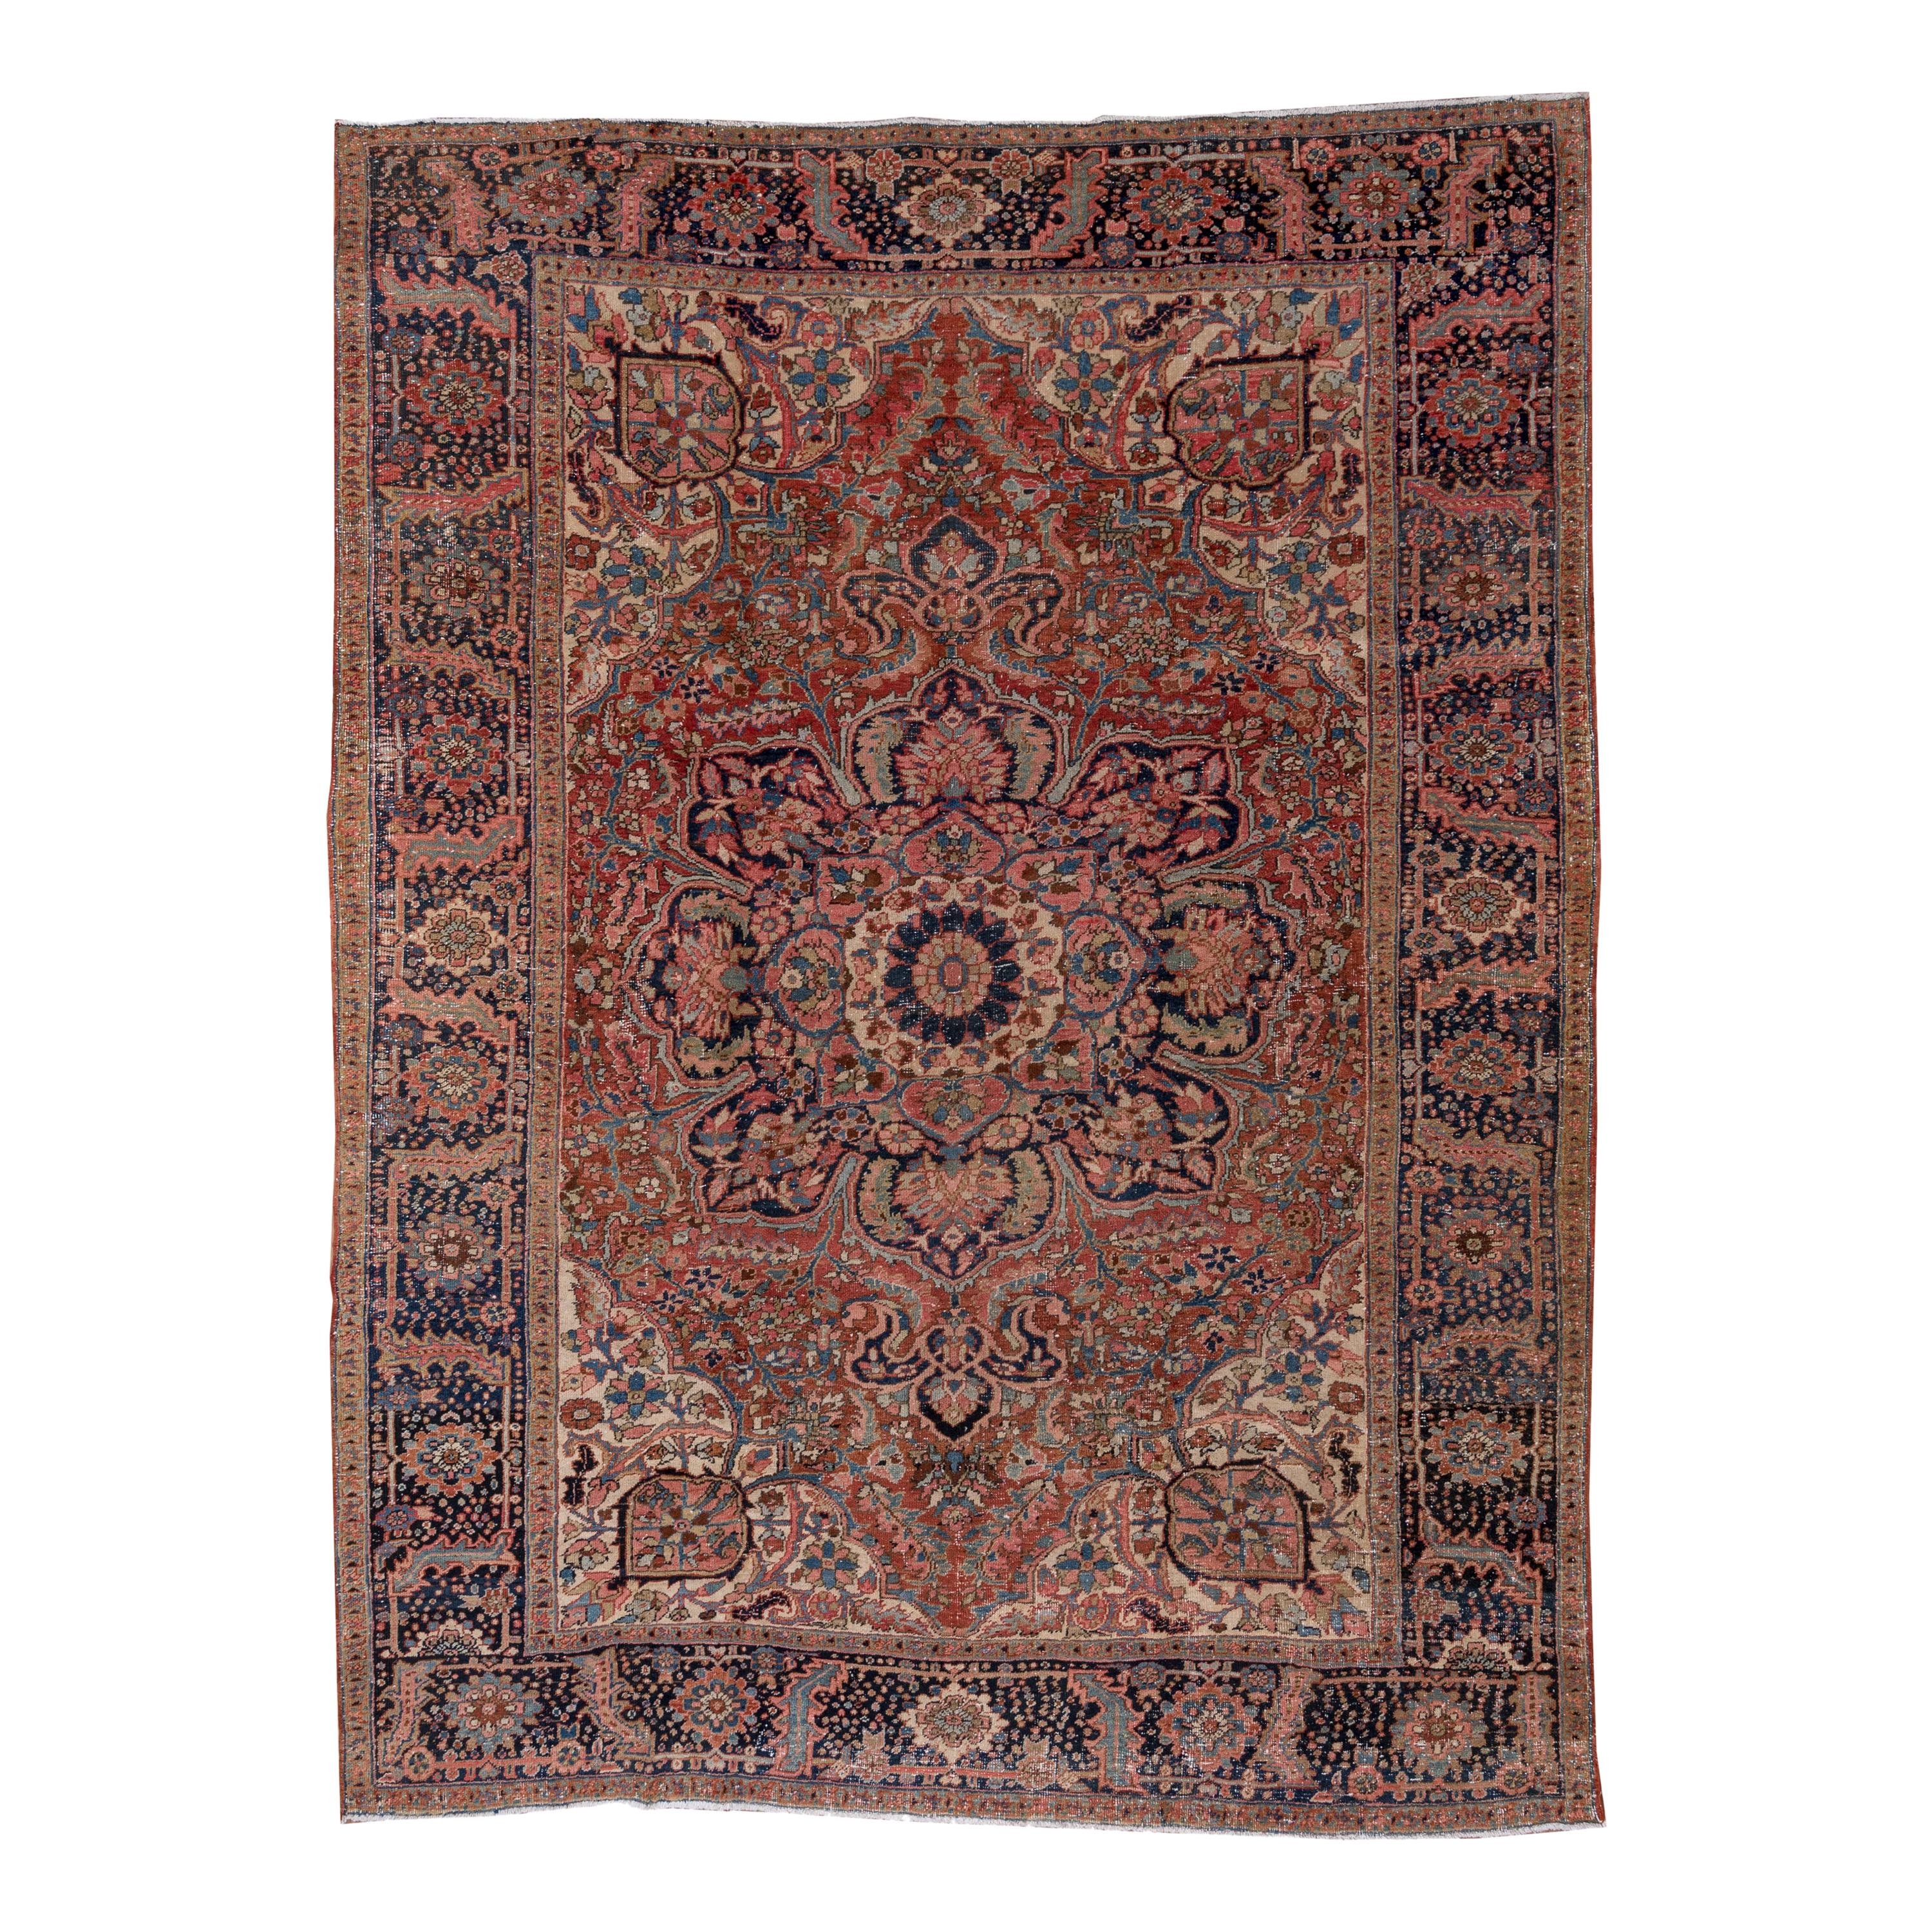 Formal and Rustic Antique Heriz Carpet